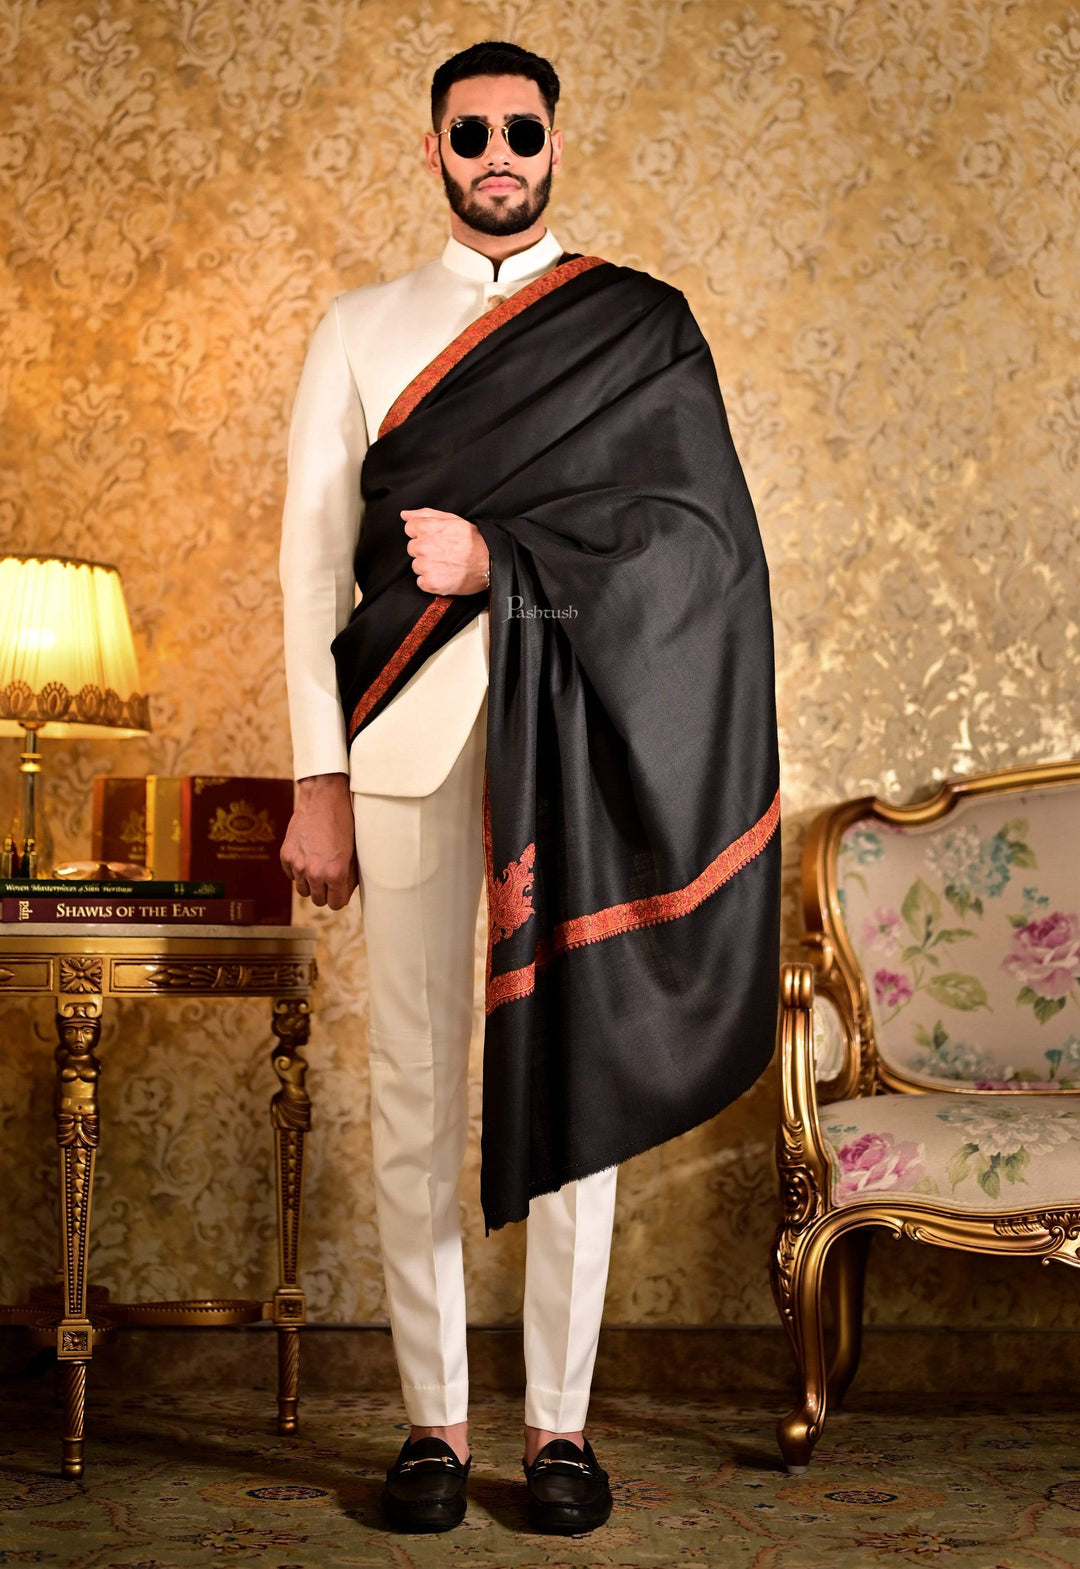 Pashtush India 127x254 Pashtush Mens Embroidery Black Shawl, Kingri Design - Rich Black